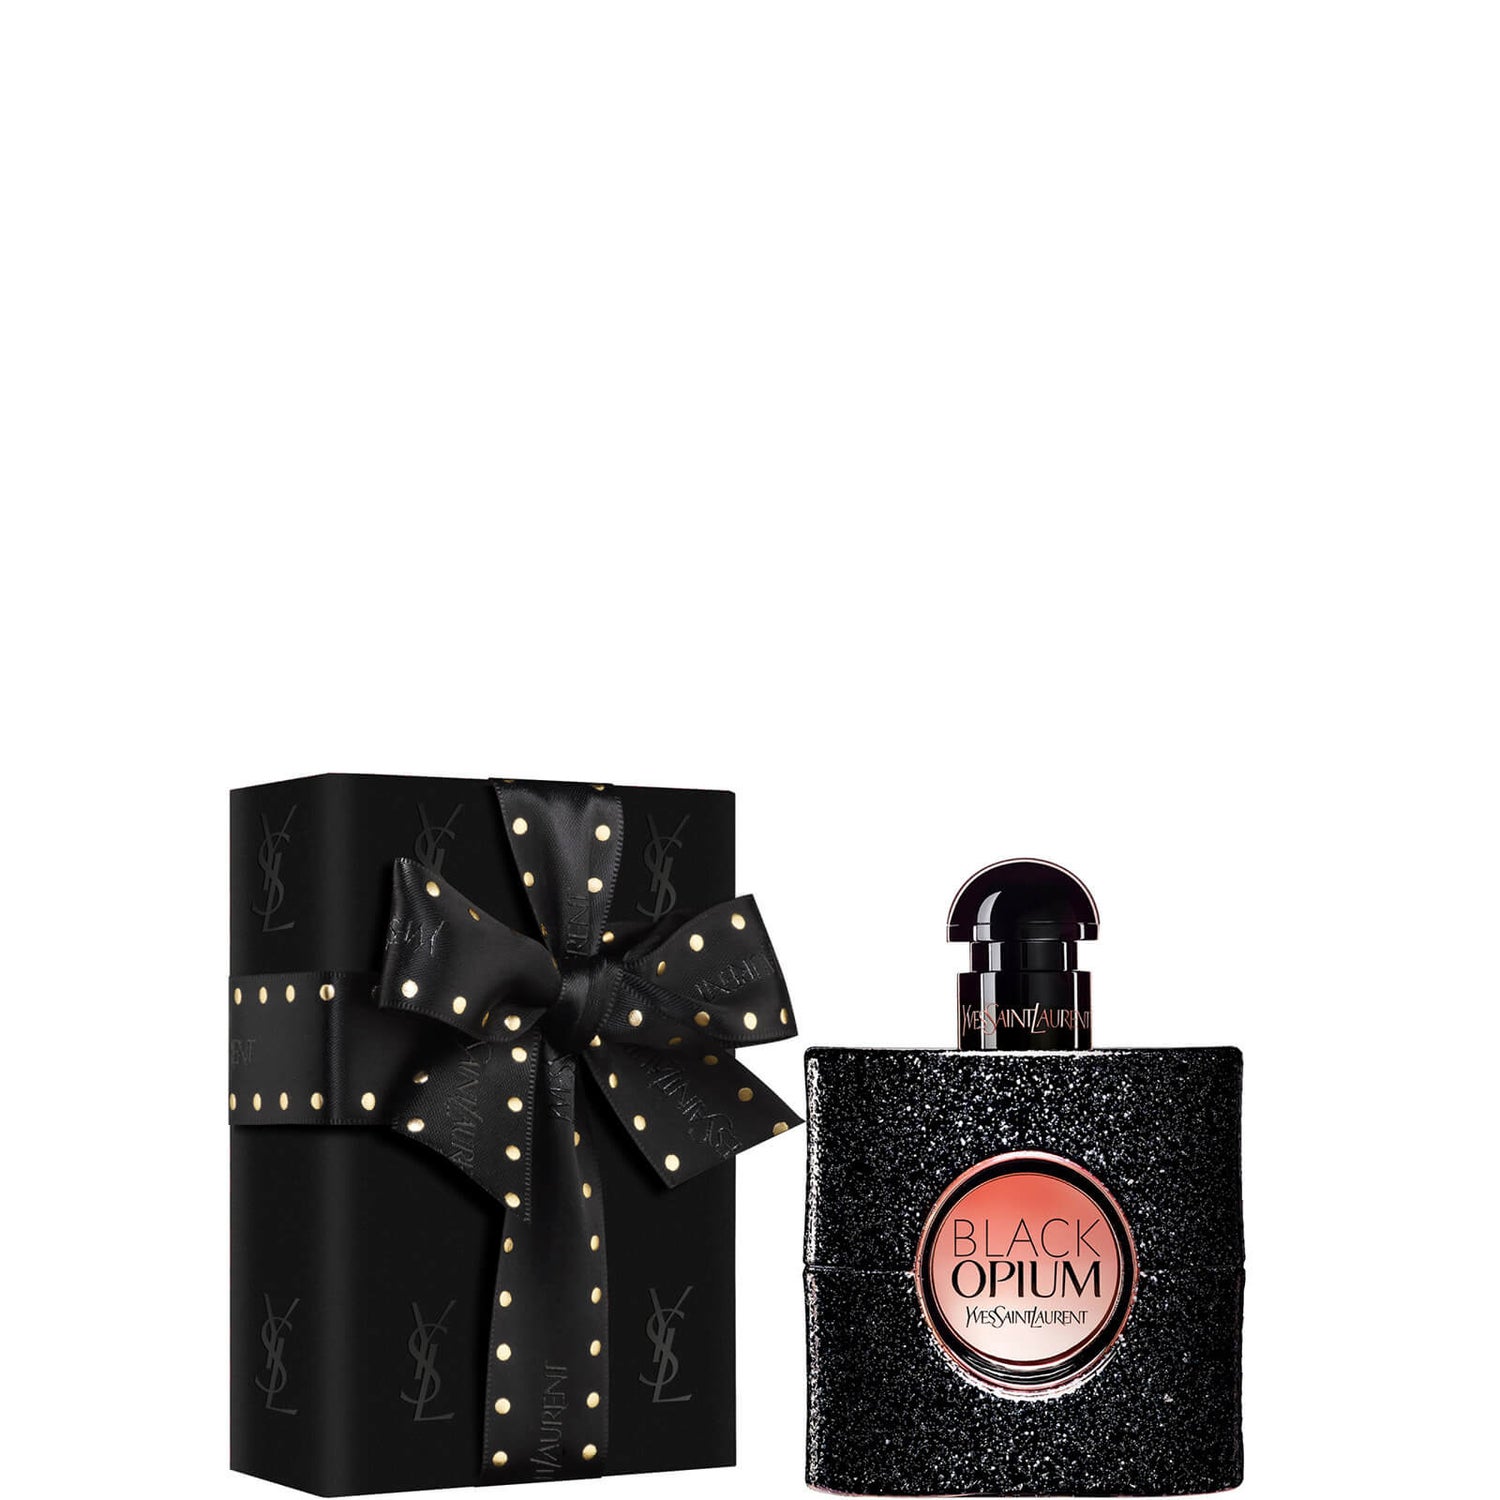 Yves Saint Laurent Pre-Wrapped Black Opium Eau de Parfum - 50ml